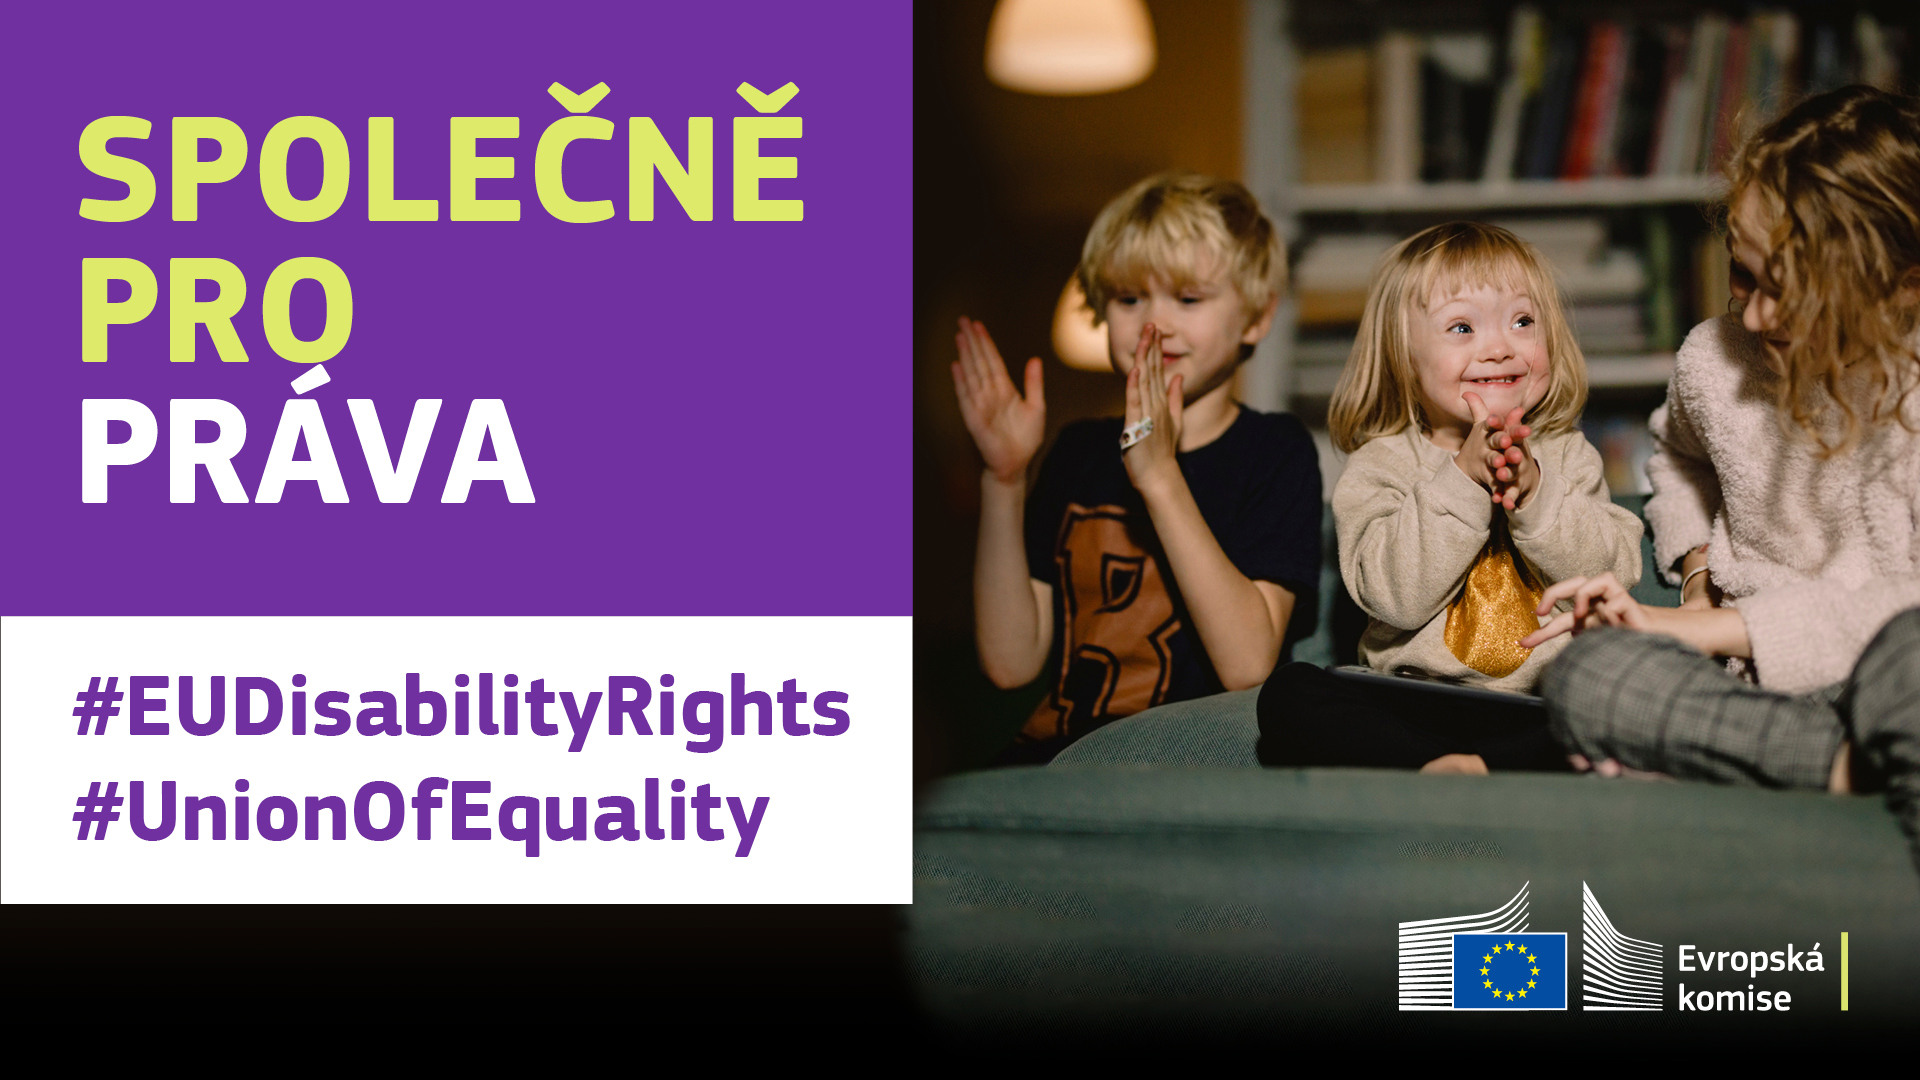 Tři děti si spolu šťastně hrají. Jedno z nich má Downův syndrom. Text: Společně pro práva, #EUDisabilityRights, #UnionOfEquality.